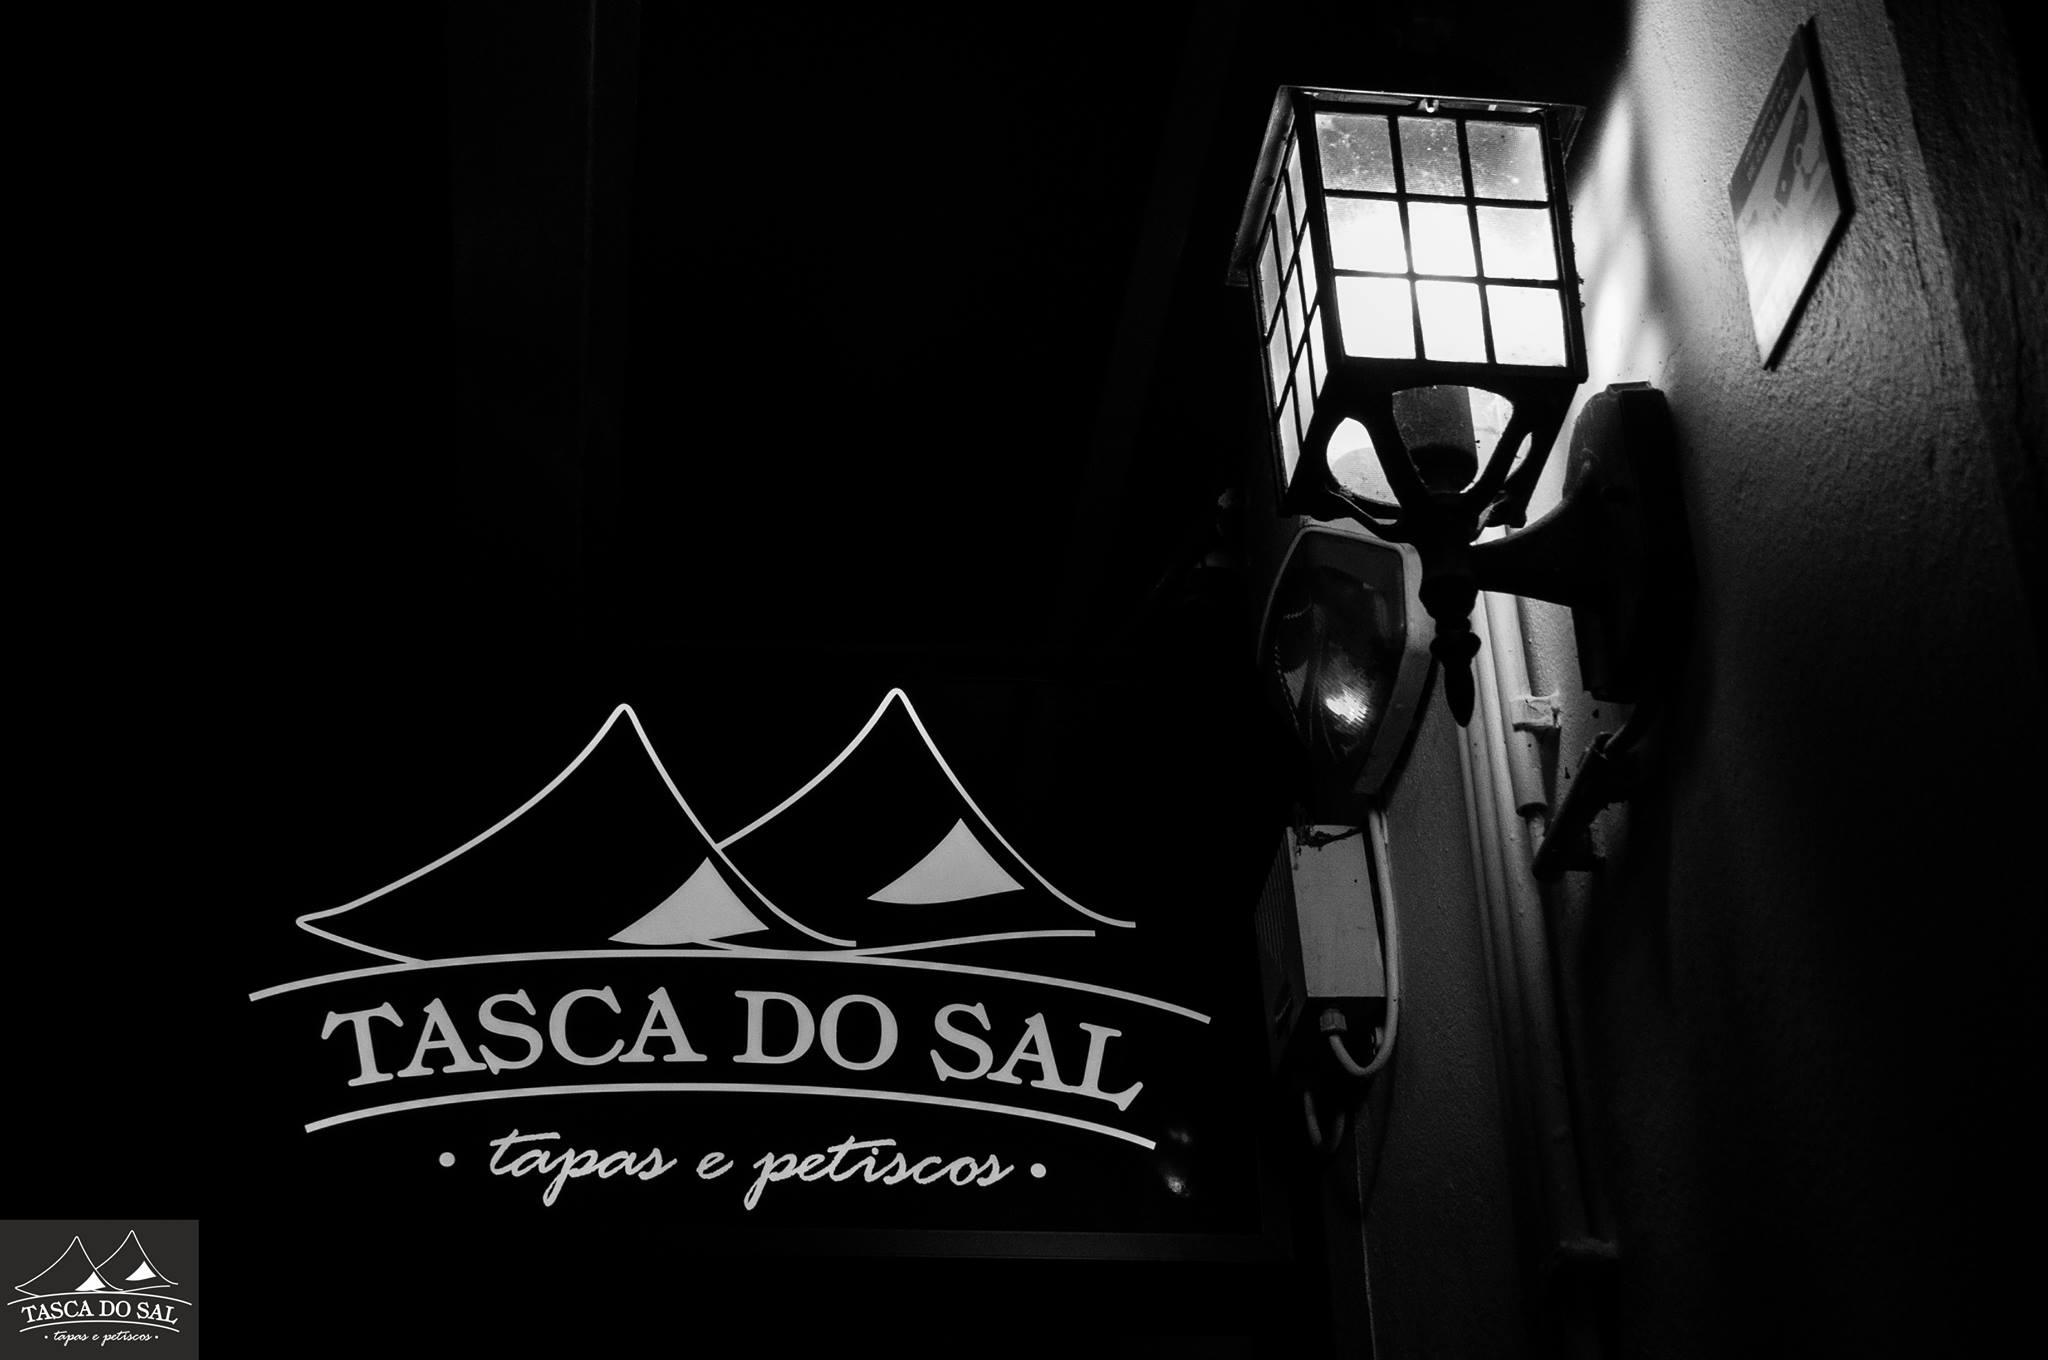 Tasca do Sal